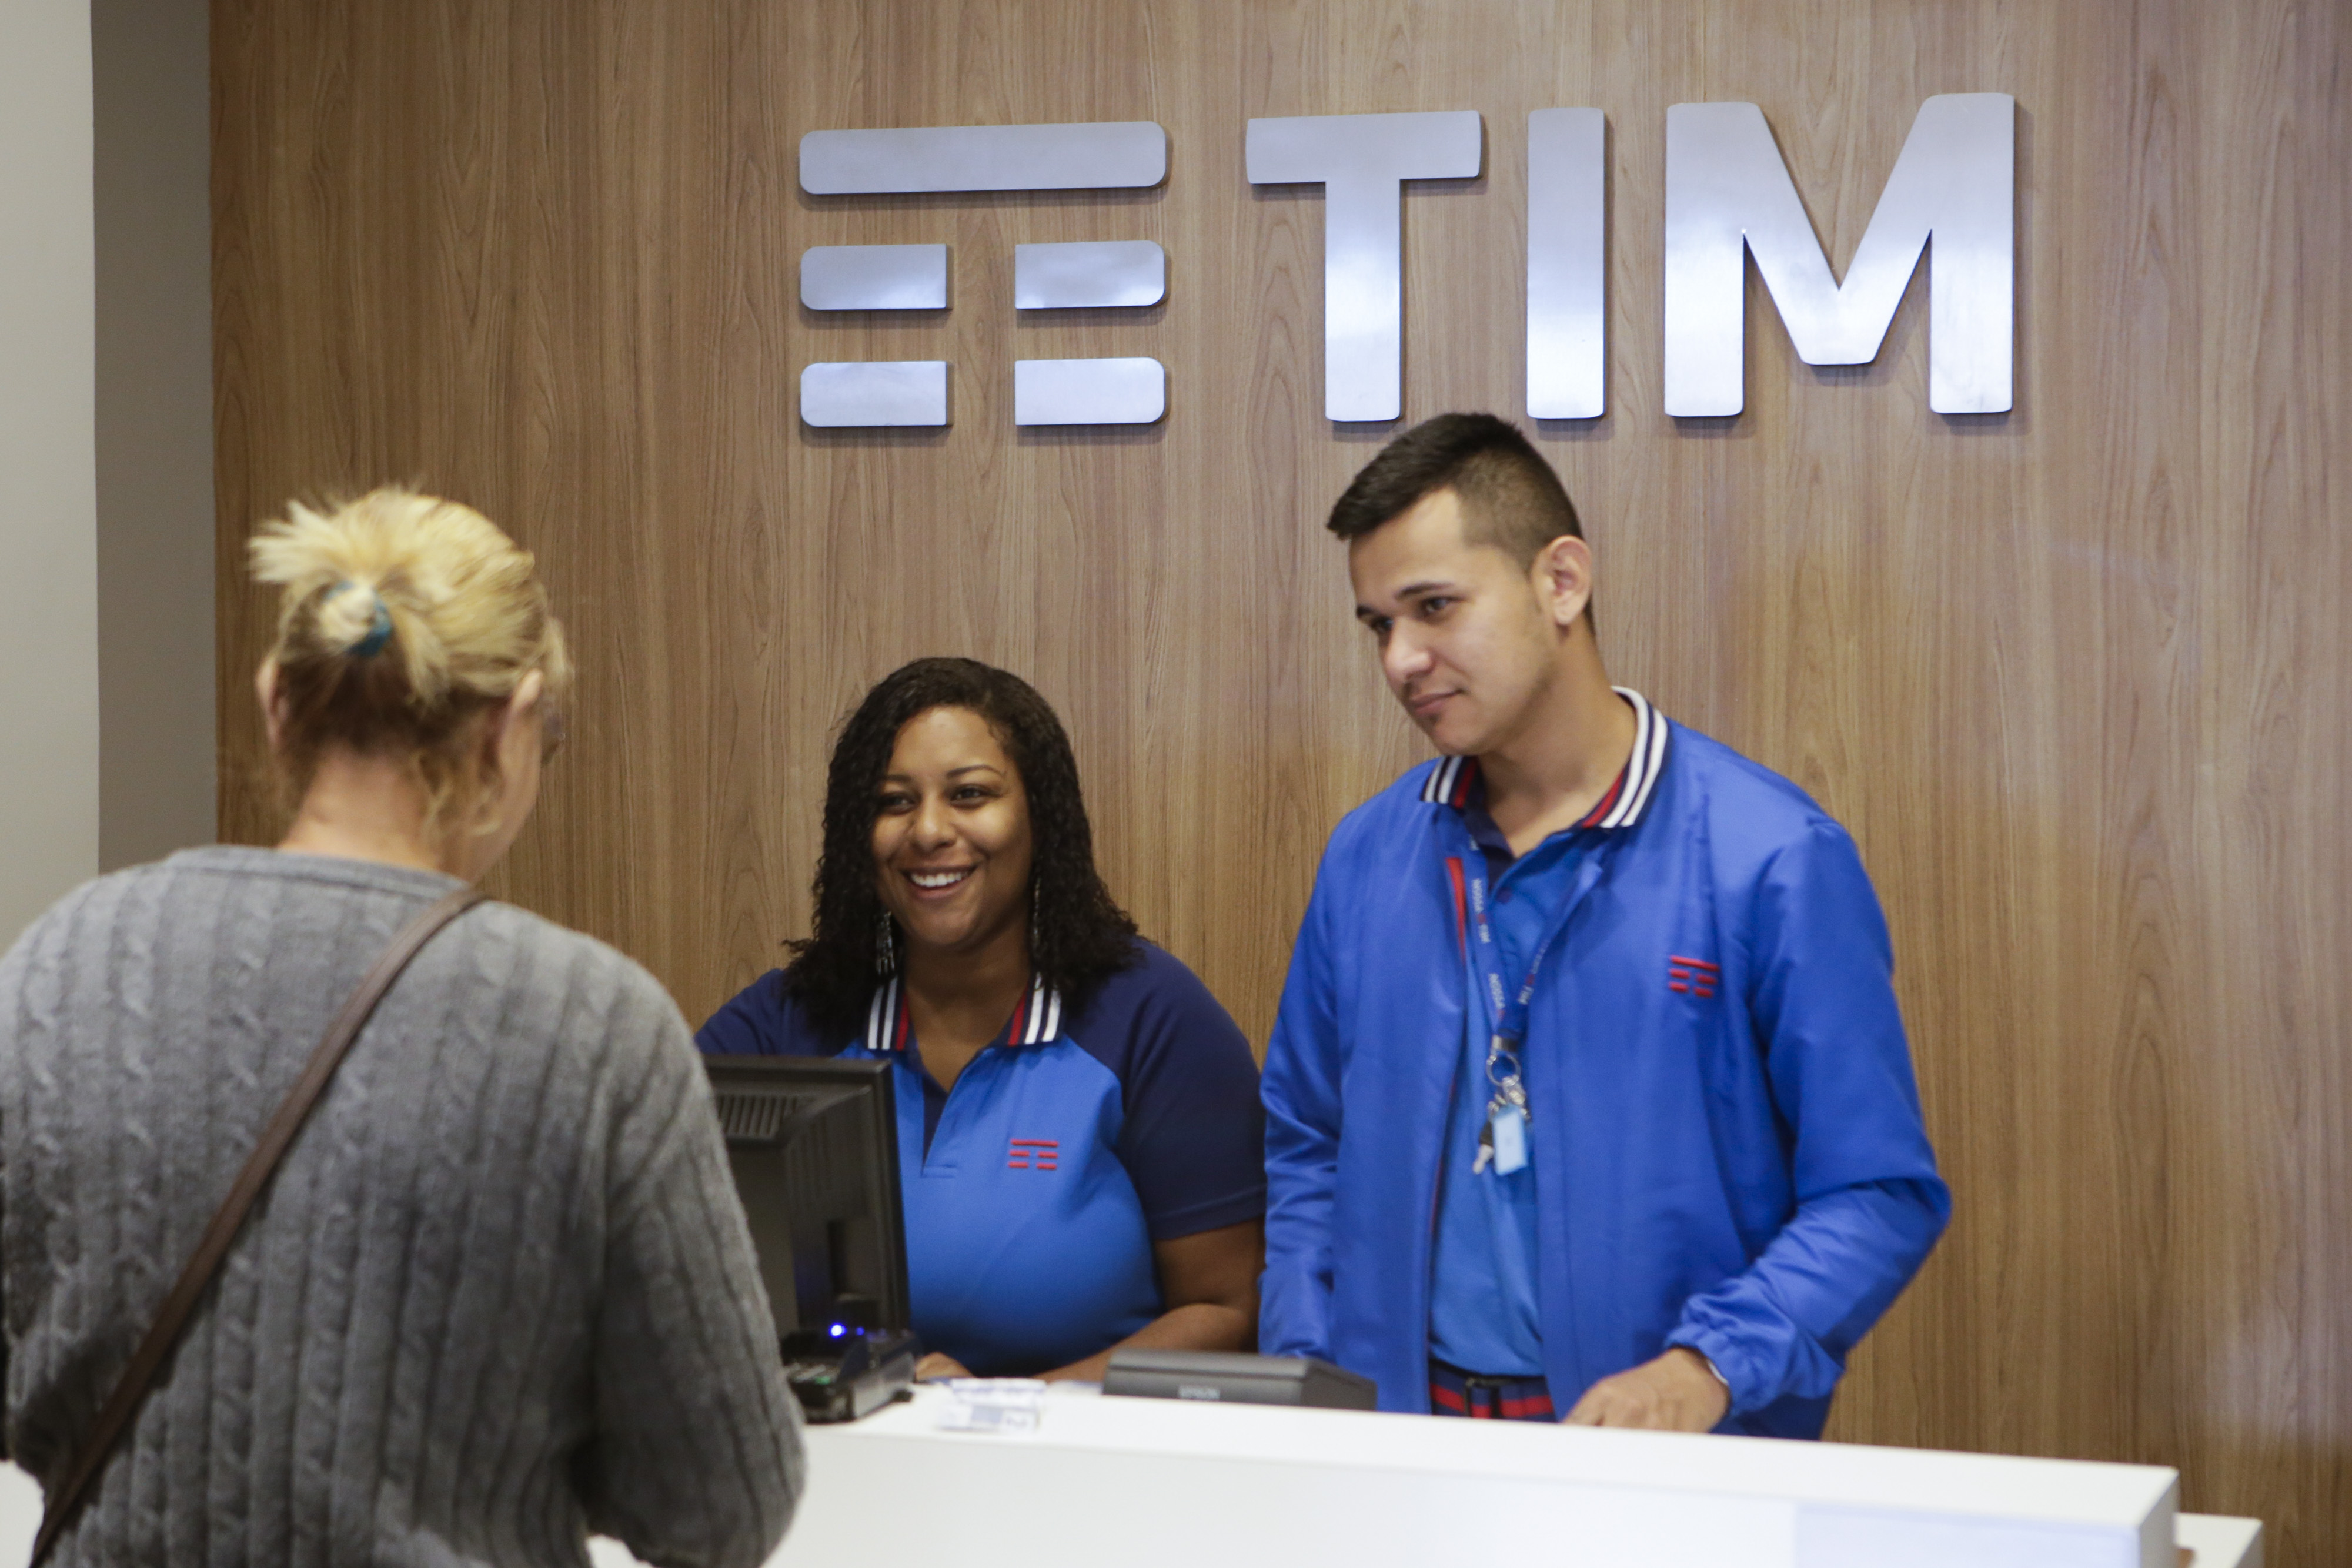 TIM Beta suspende novas adesões em Santa Catarina; Claro e TIM mudam planos